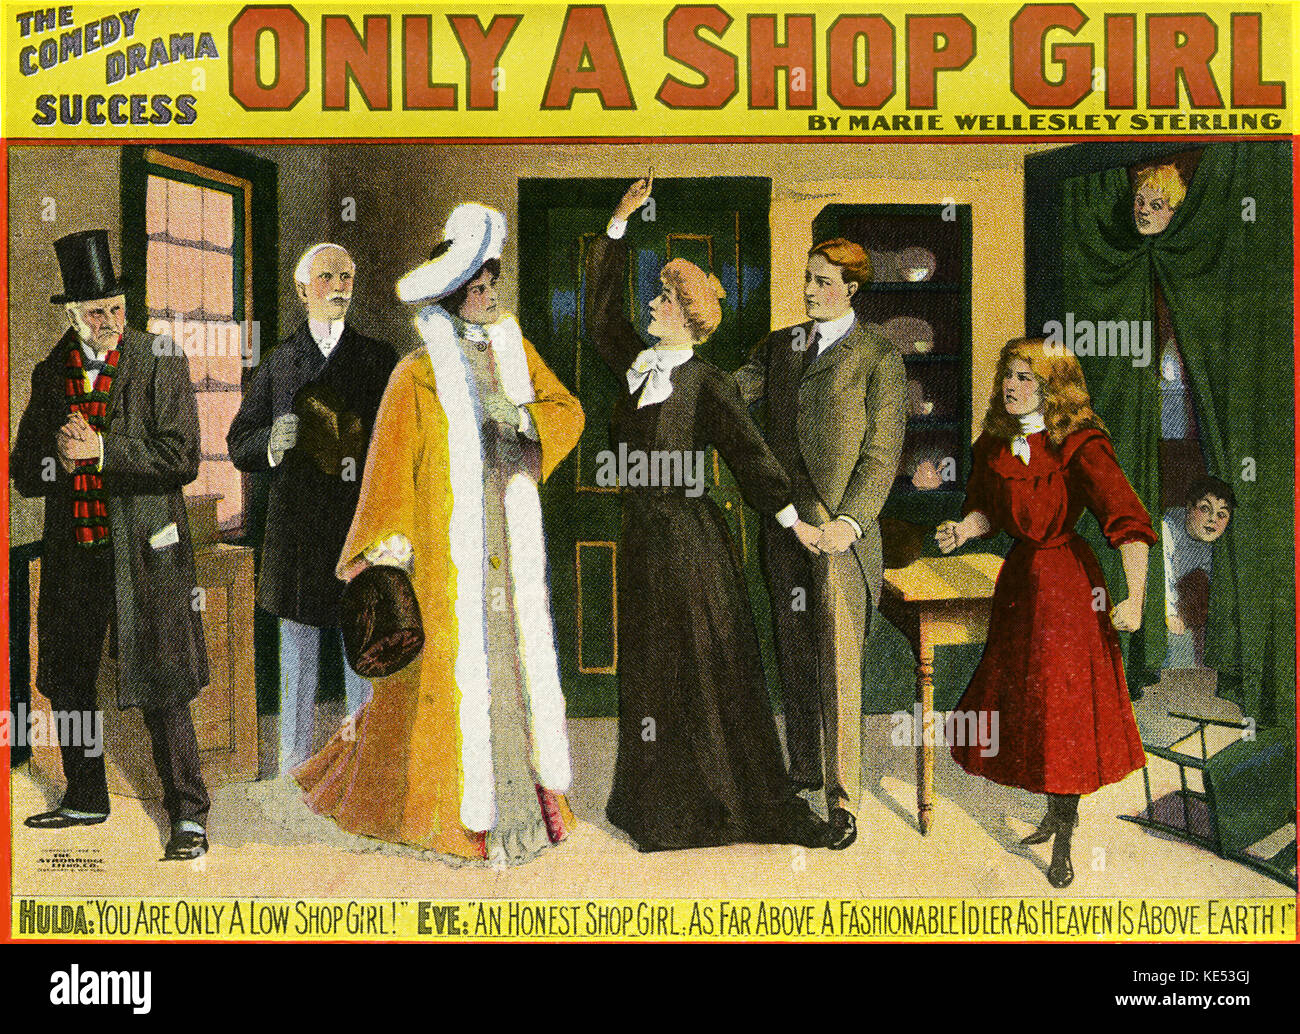 Nur einen Shop Mädchen - Werbung Plakat für komische Marie Wellesley von Sterling spielen. Ein New Yorker Bowery Klassiker aus den 1890er Jahren. Bildunterschrift lautet: "Hulda: Sie sind nur eine geringe shop Mädchen! Eve: Eine ehrliche shop Mädchen. Wie weit über eine modische Spannrolle wie der Himmel über der Erde!". Stockfoto